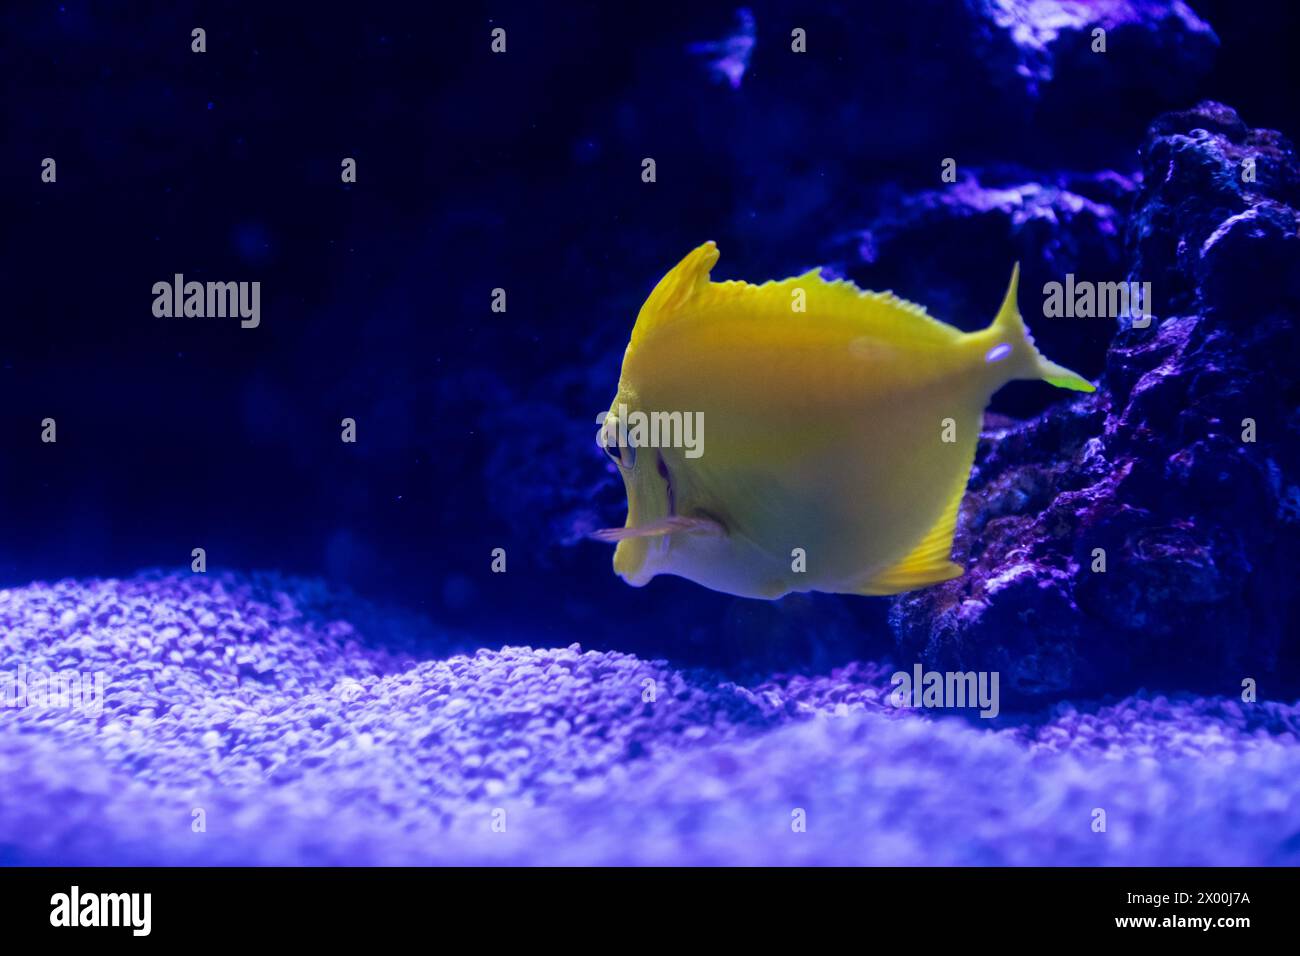 Jaune Tang sous l'eau, avec un fond bleu distinct. Image colorée Banque D'Images